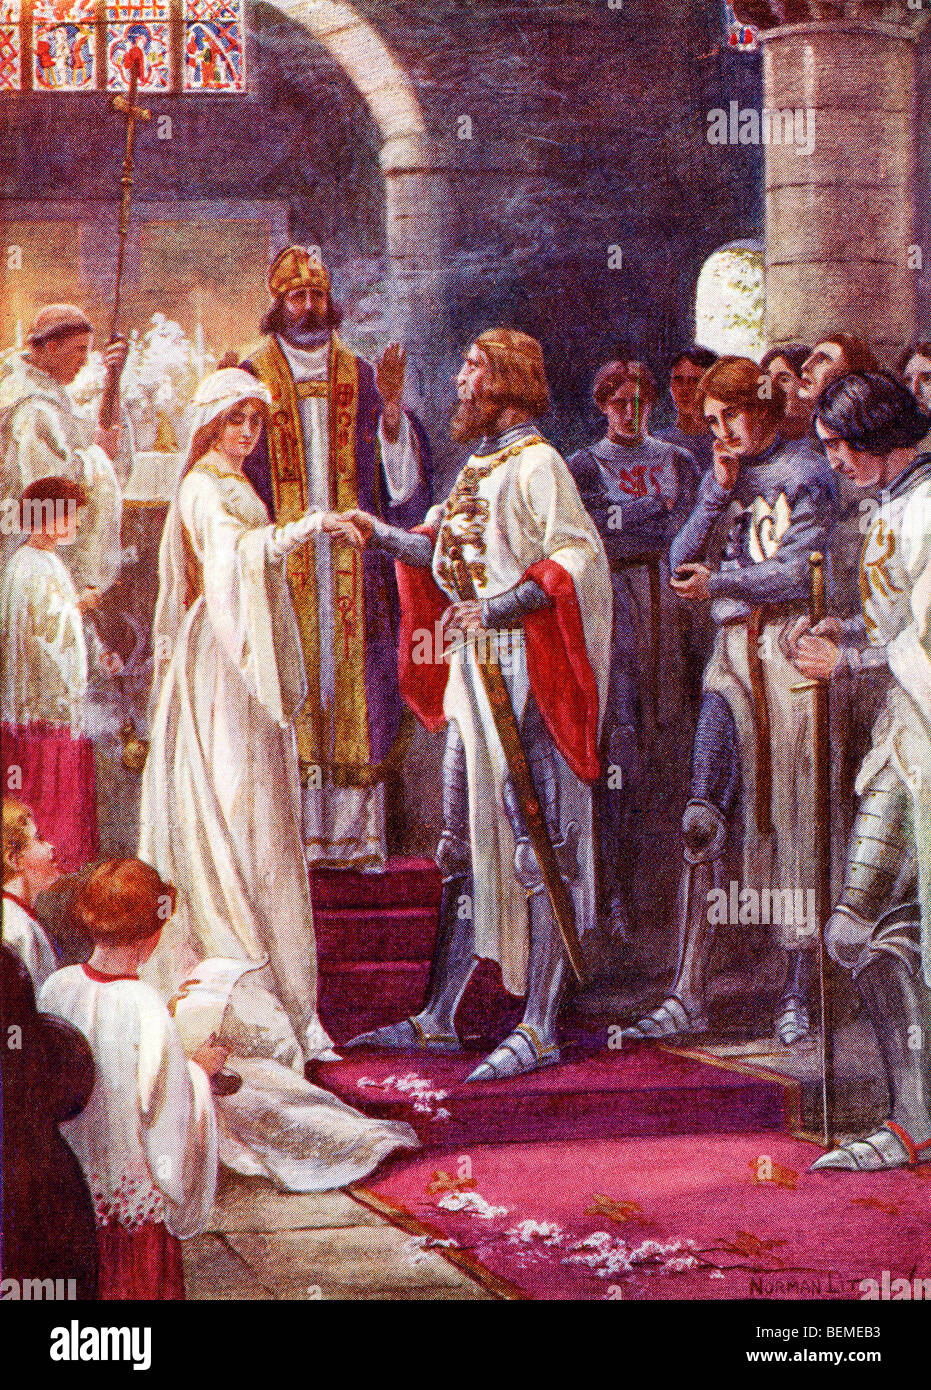 Die Ehe von König Artus und Guinevere. Farbige Illustration aus dem Buch The Gateway zu Tennyson veröffentlicht 1910. Stockfoto